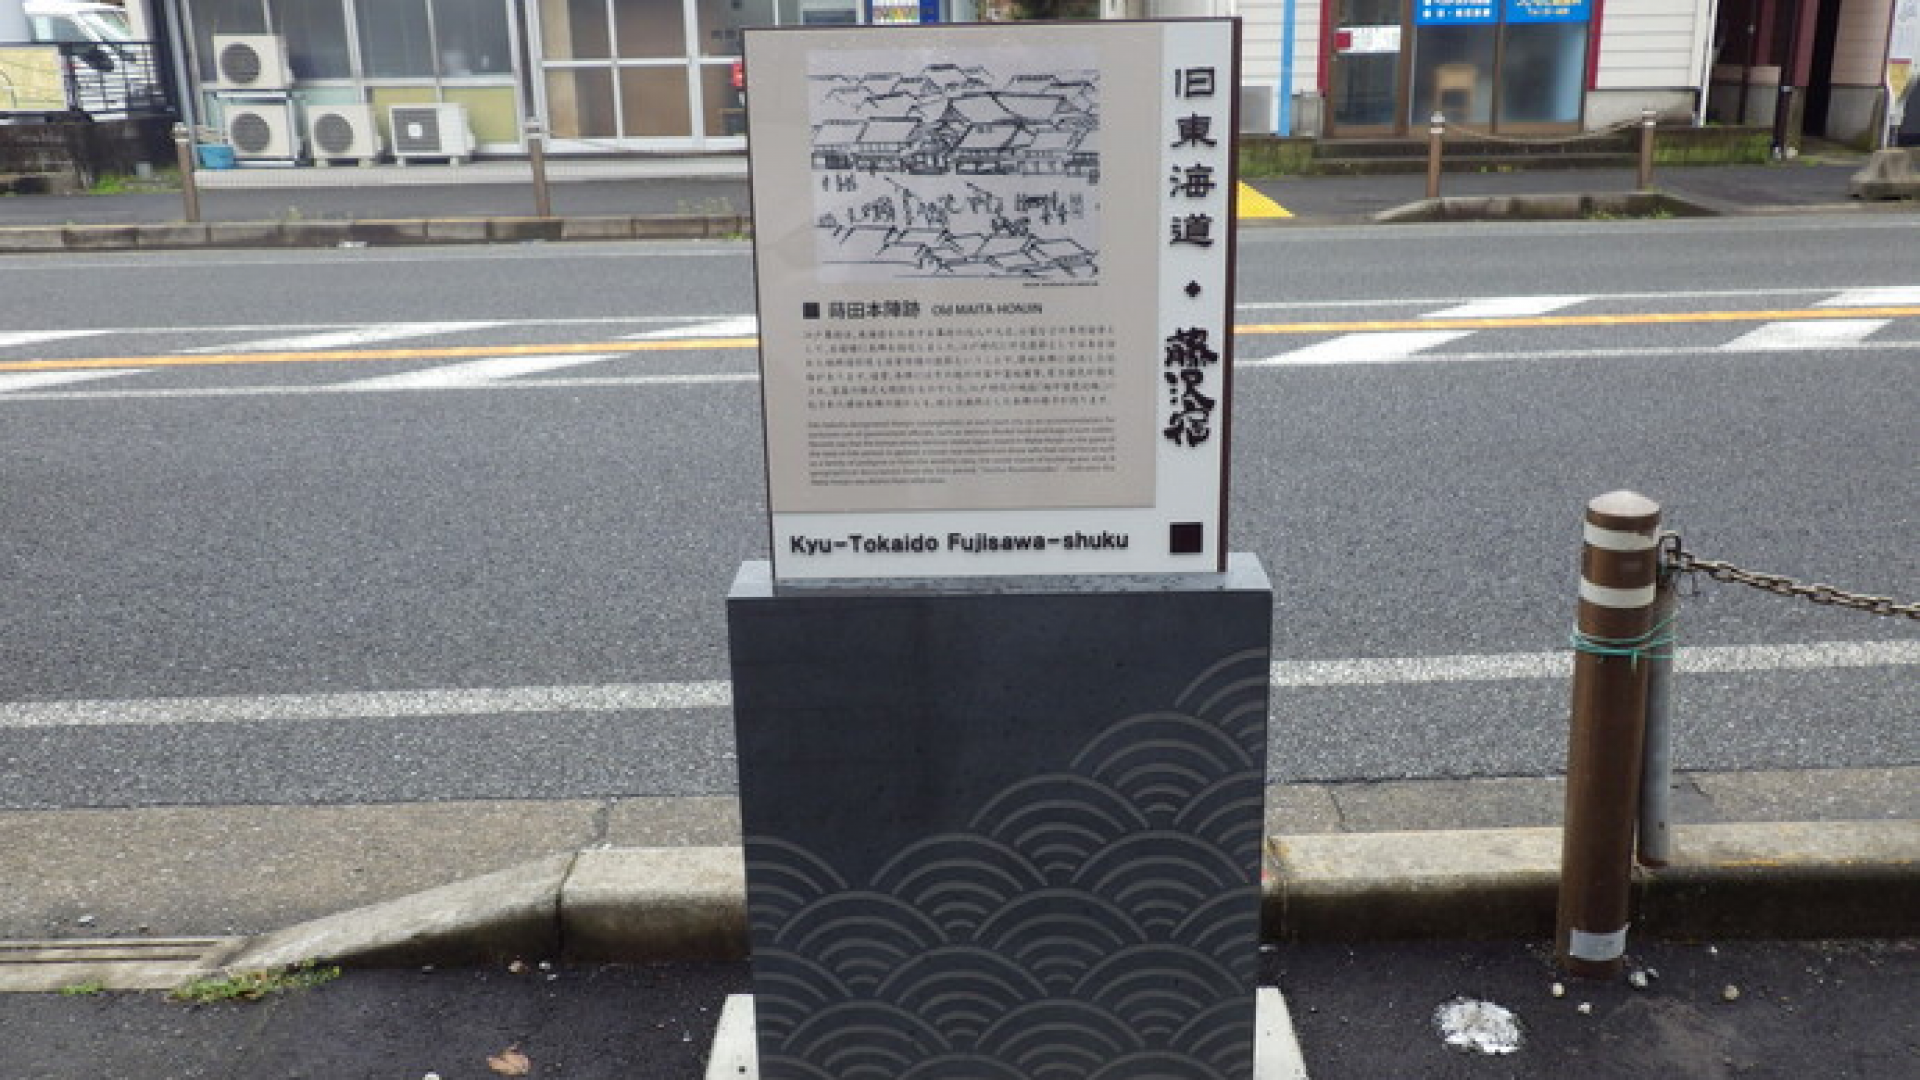 Trạm nghỉ Fujisawa (Vết tích của nhà trọ Maita)